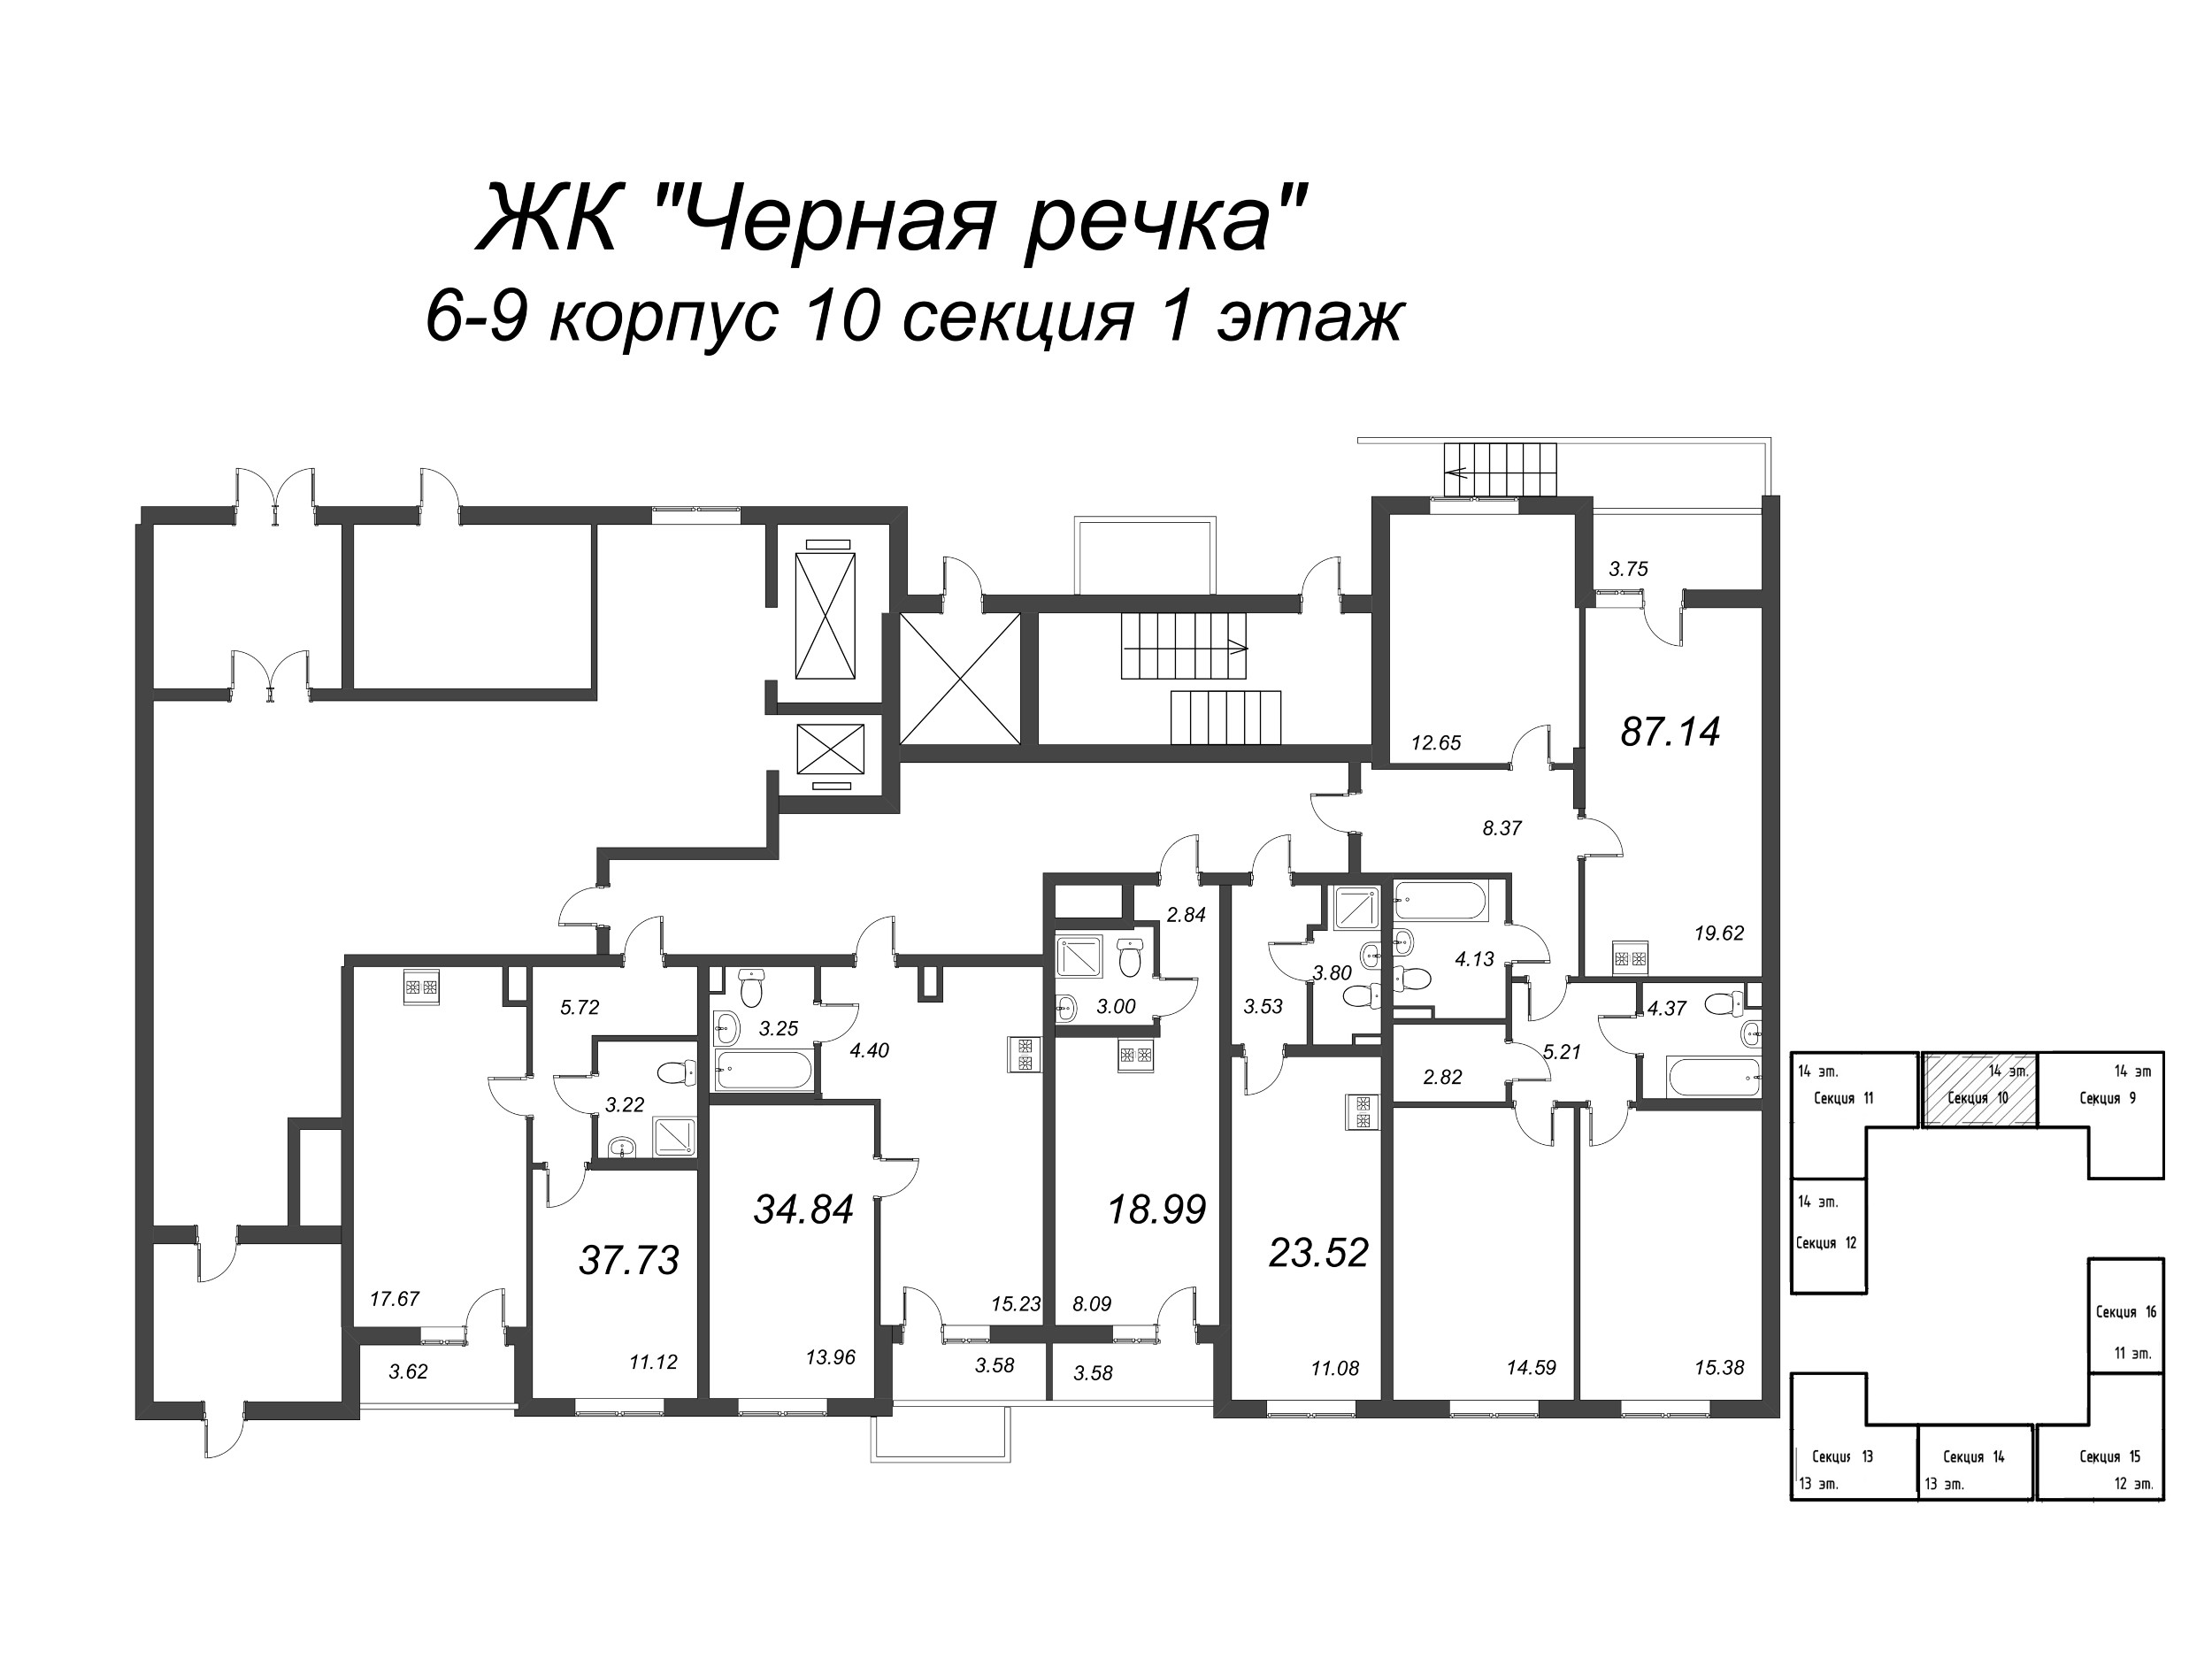 4-комнатная (Евро) квартира, 87.14 м² в ЖК "Чёрная речка" - планировка этажа